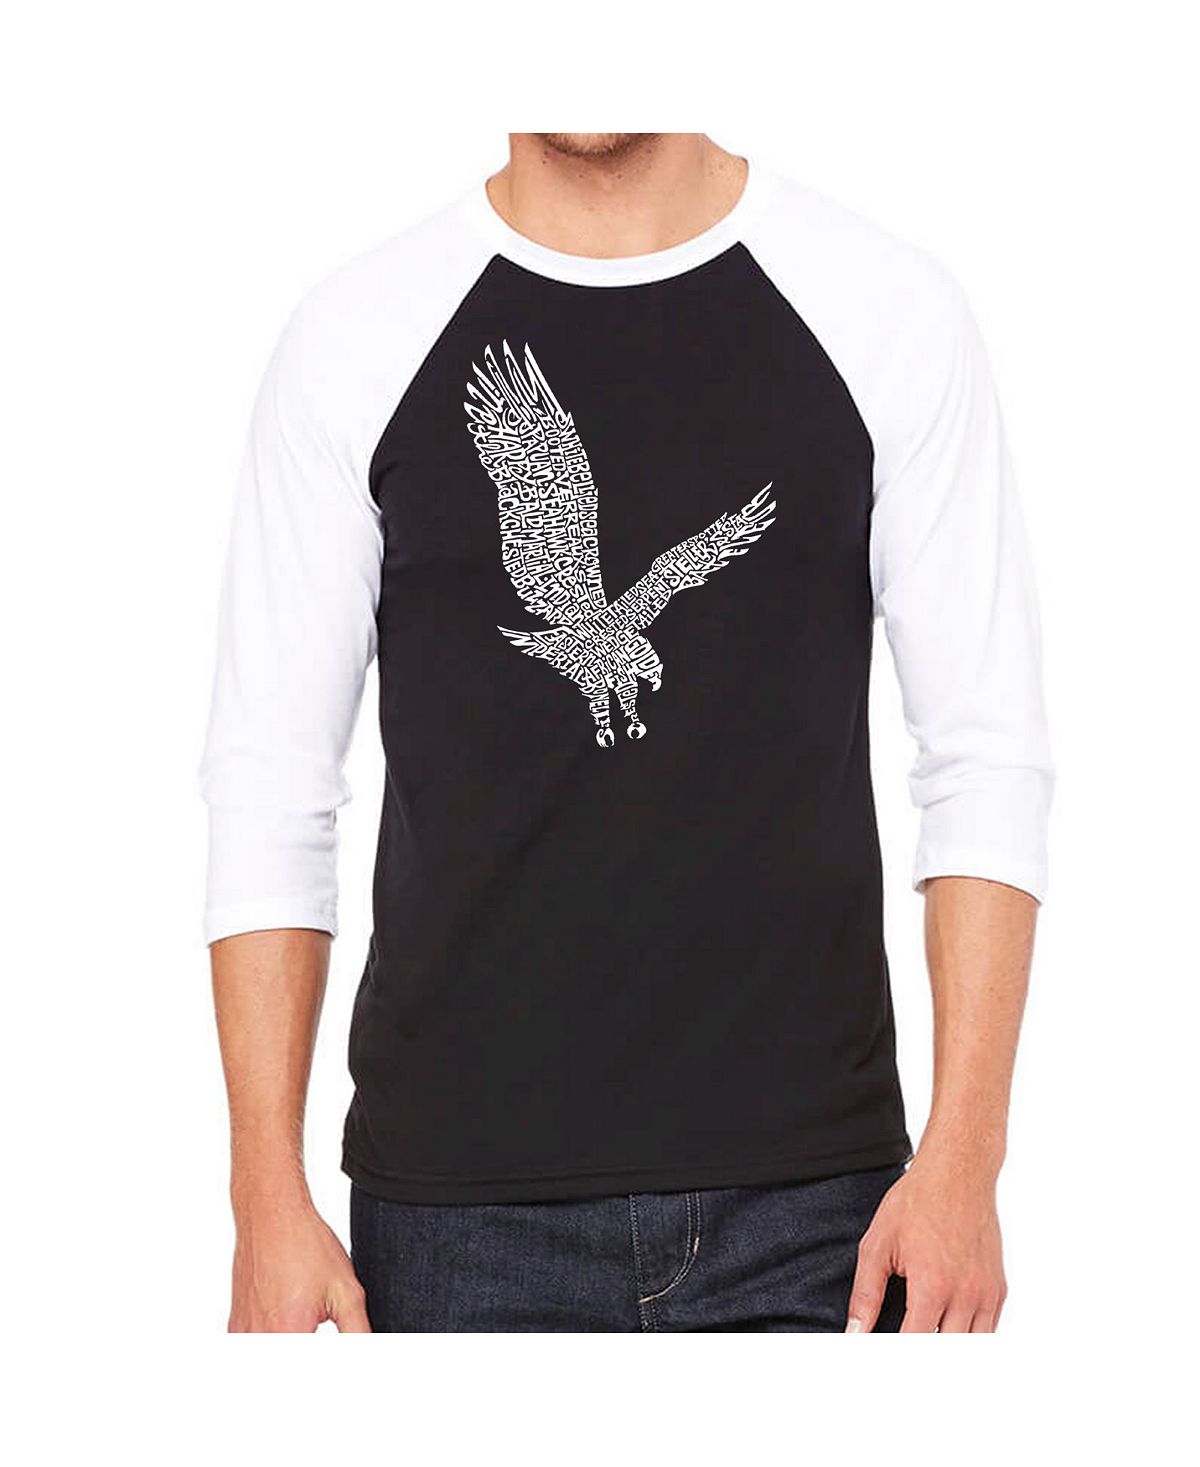 Мужская футболка с надписью eagle и регланом word art LA Pop Art, черный николай орлов